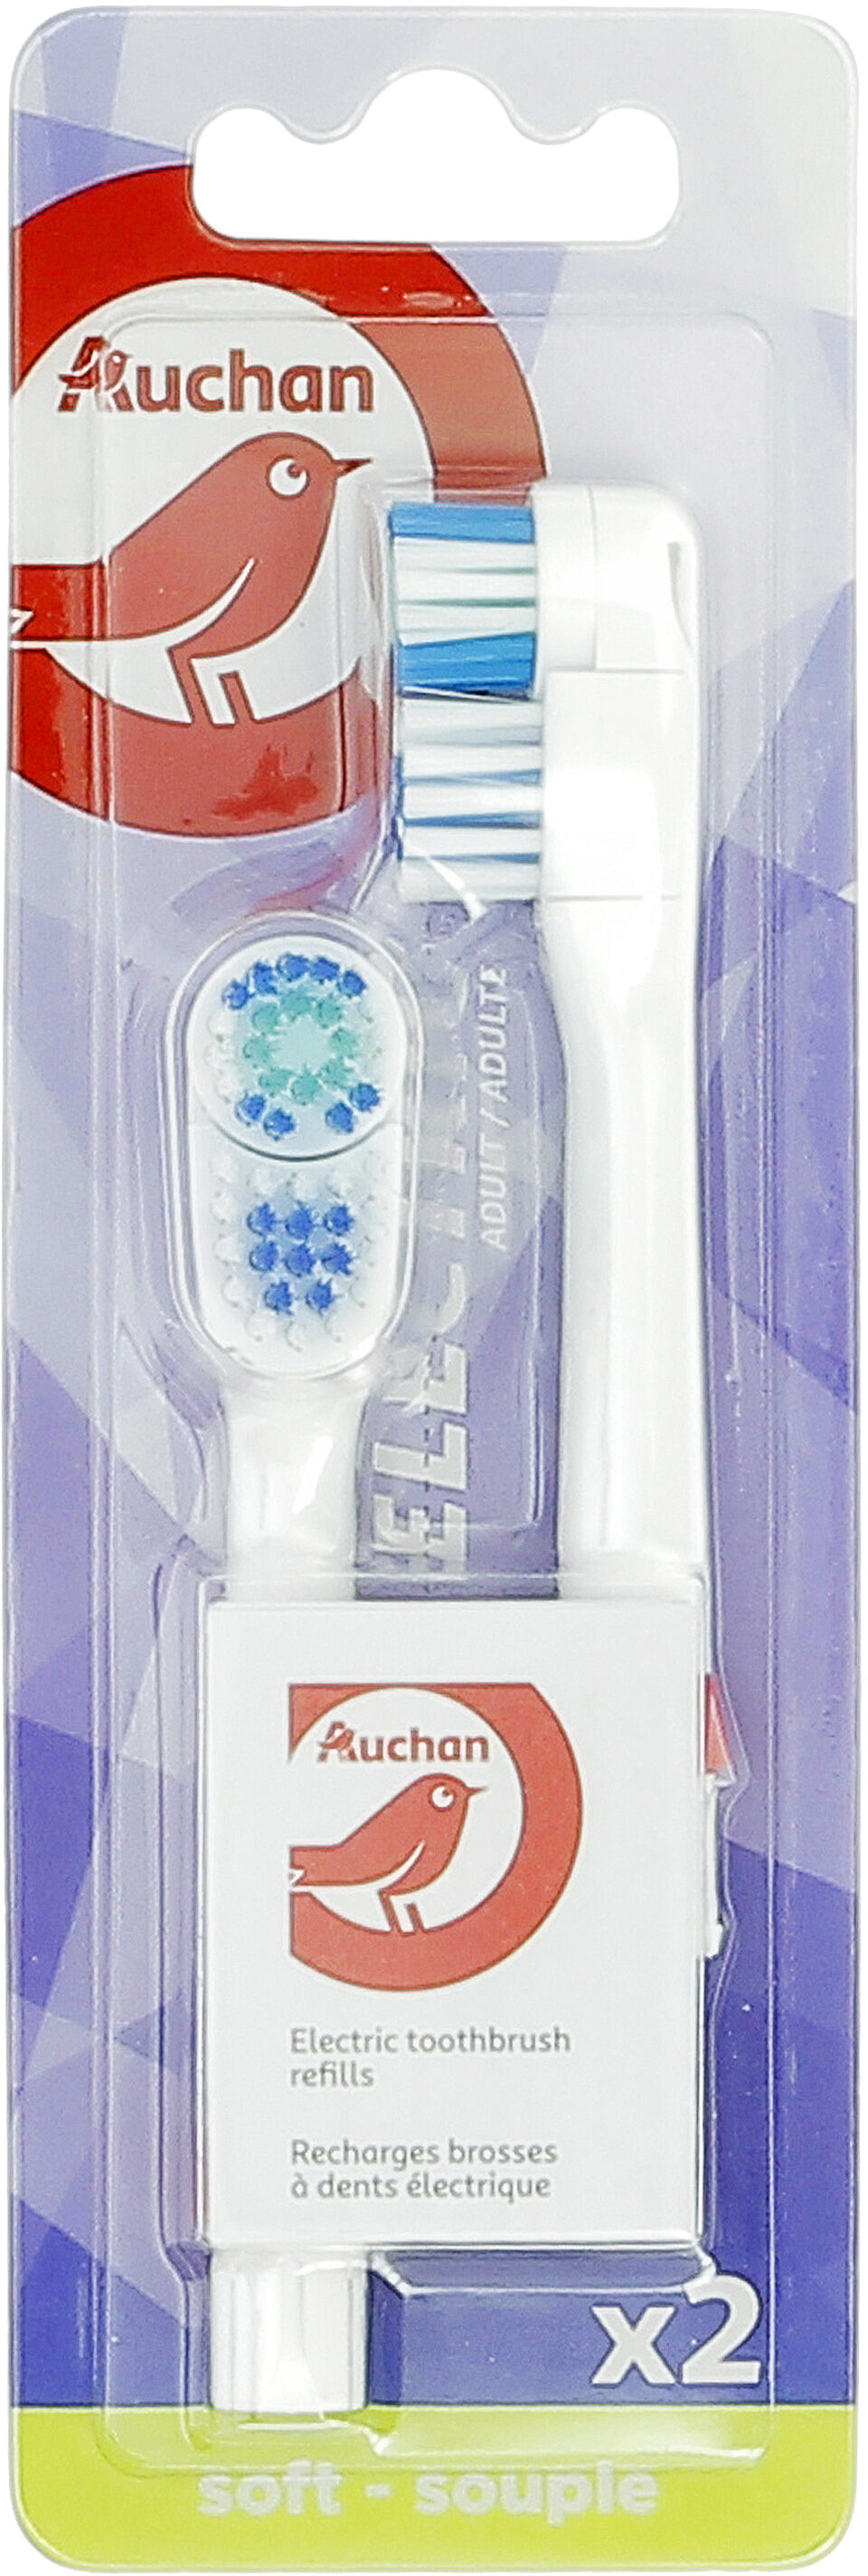 Recharges brosse à dents électrique - Product - fr